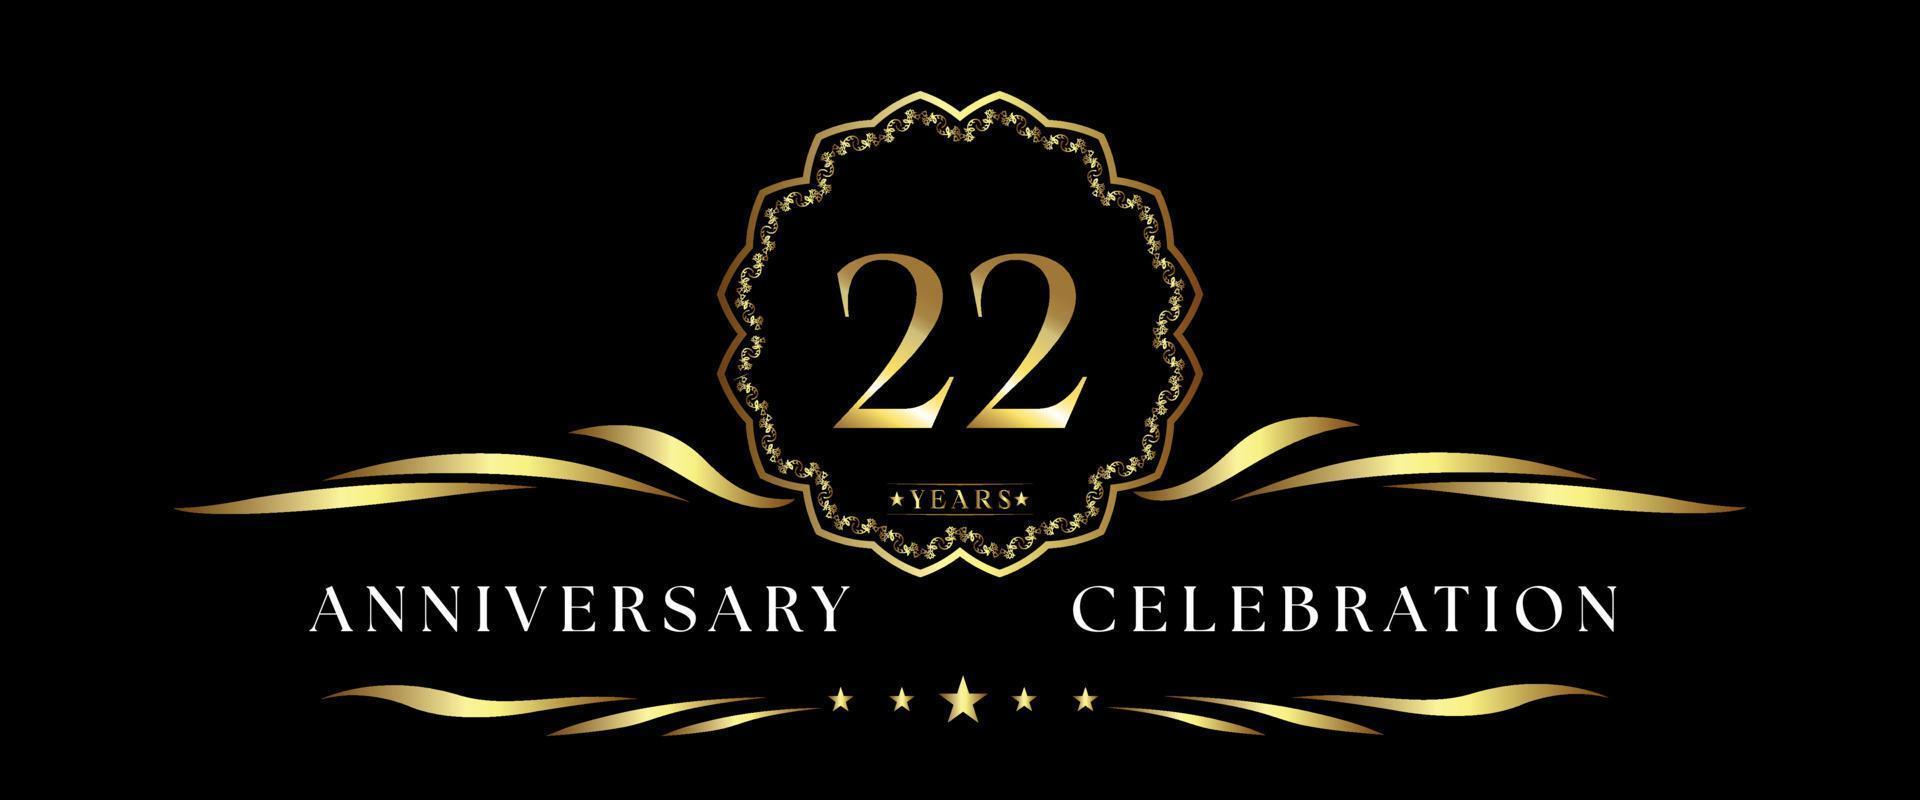 Celebración del aniversario de 22 años con marco decorativo dorado aislado en fondo negro. diseño vectorial para tarjetas de felicitación, fiesta de cumpleaños, boda, fiesta de eventos, ceremonia. Logotipo de aniversario de 22 años. vector